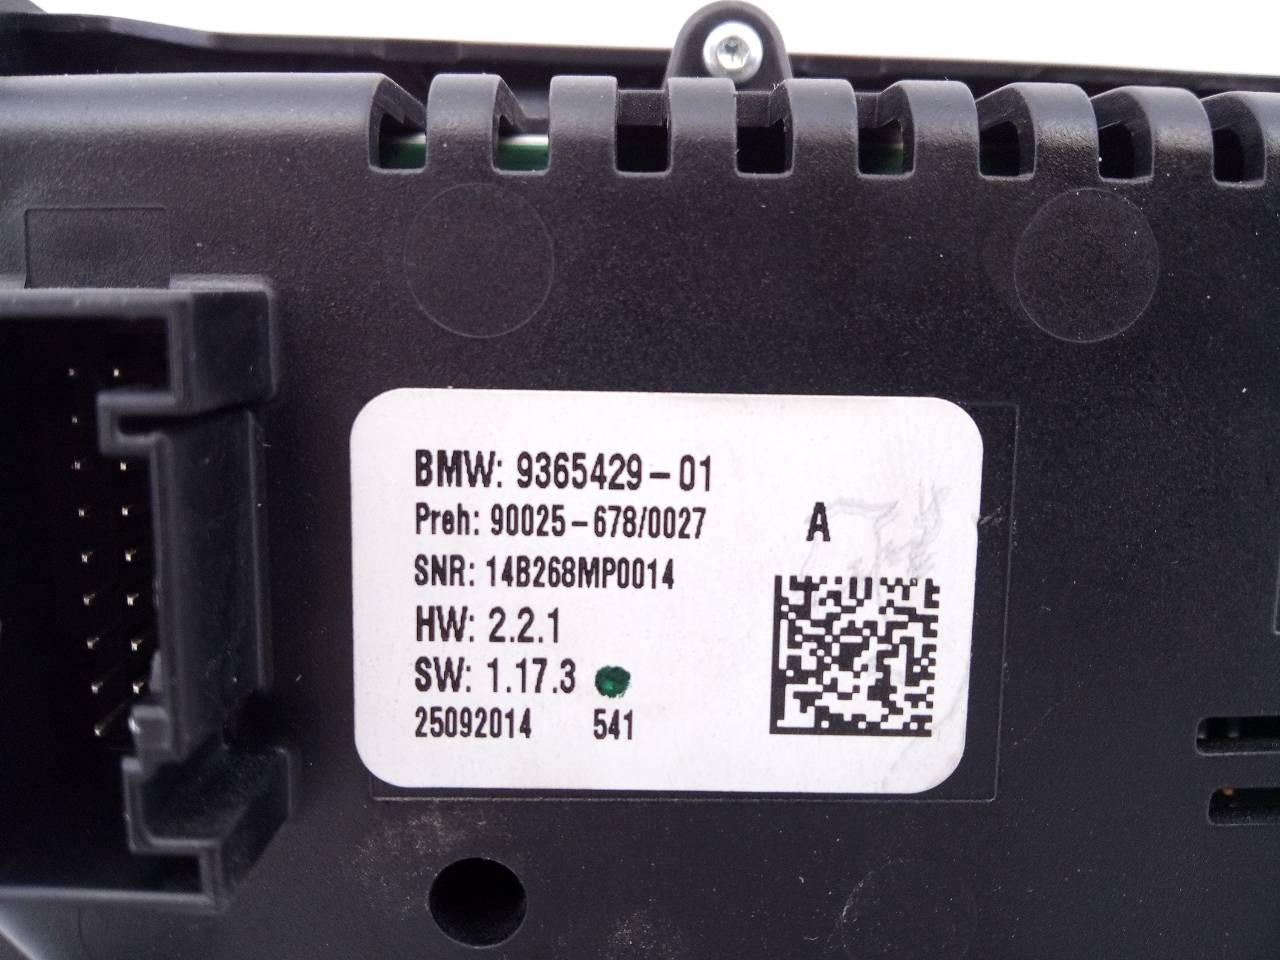 BMW X5 F15 (2013-2018) Muzikos grotuvas su navigacija BM934787803O, 936542901, E3-A2-40-1 20966033